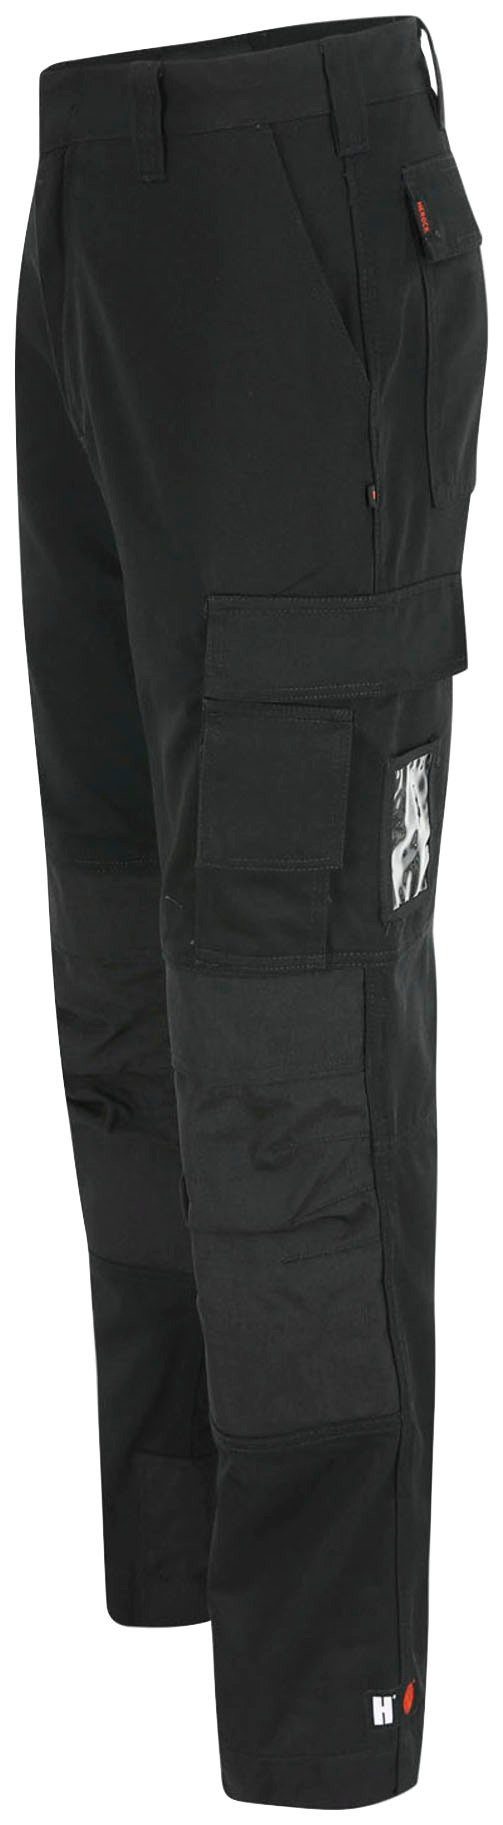 Herock Arbeitshose TITAN Taschen, wasserabweisend, sehr Kurzgröβe, 3-Naht, HOSE 12 SHORTLEG schwarz angenehm